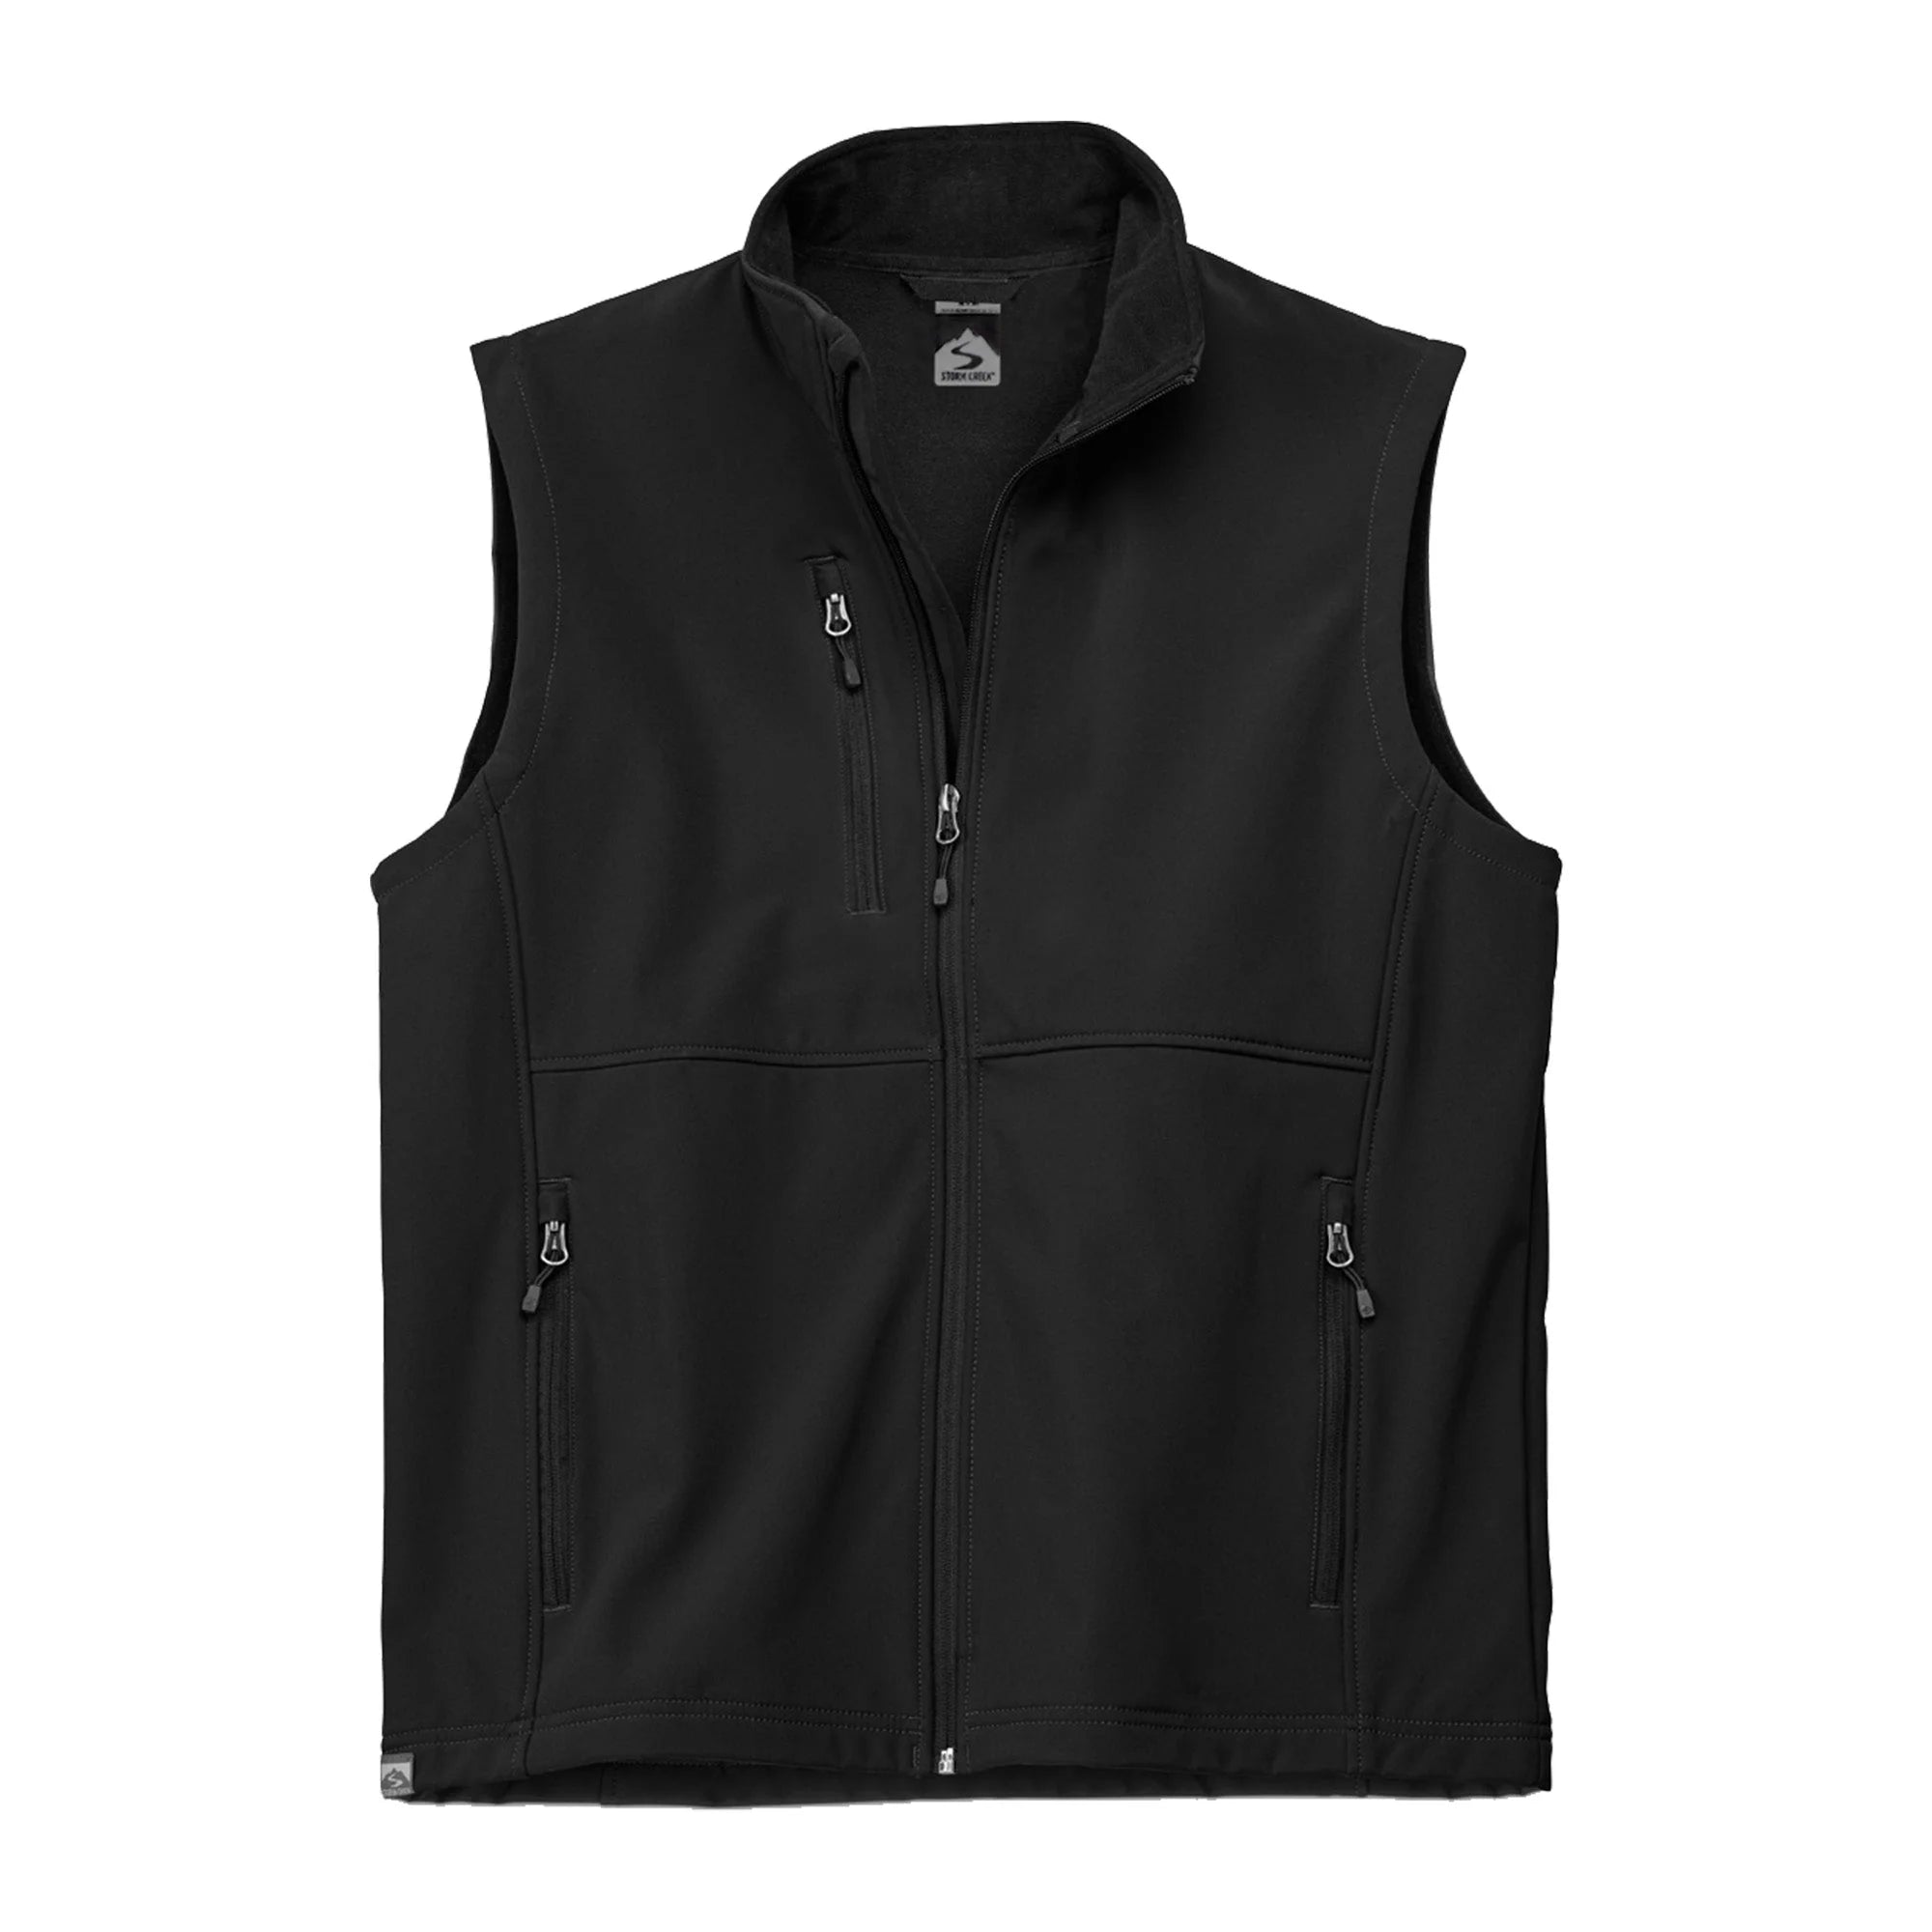 Customizable Storm Creek® Men's Trailblazer Vest in black.